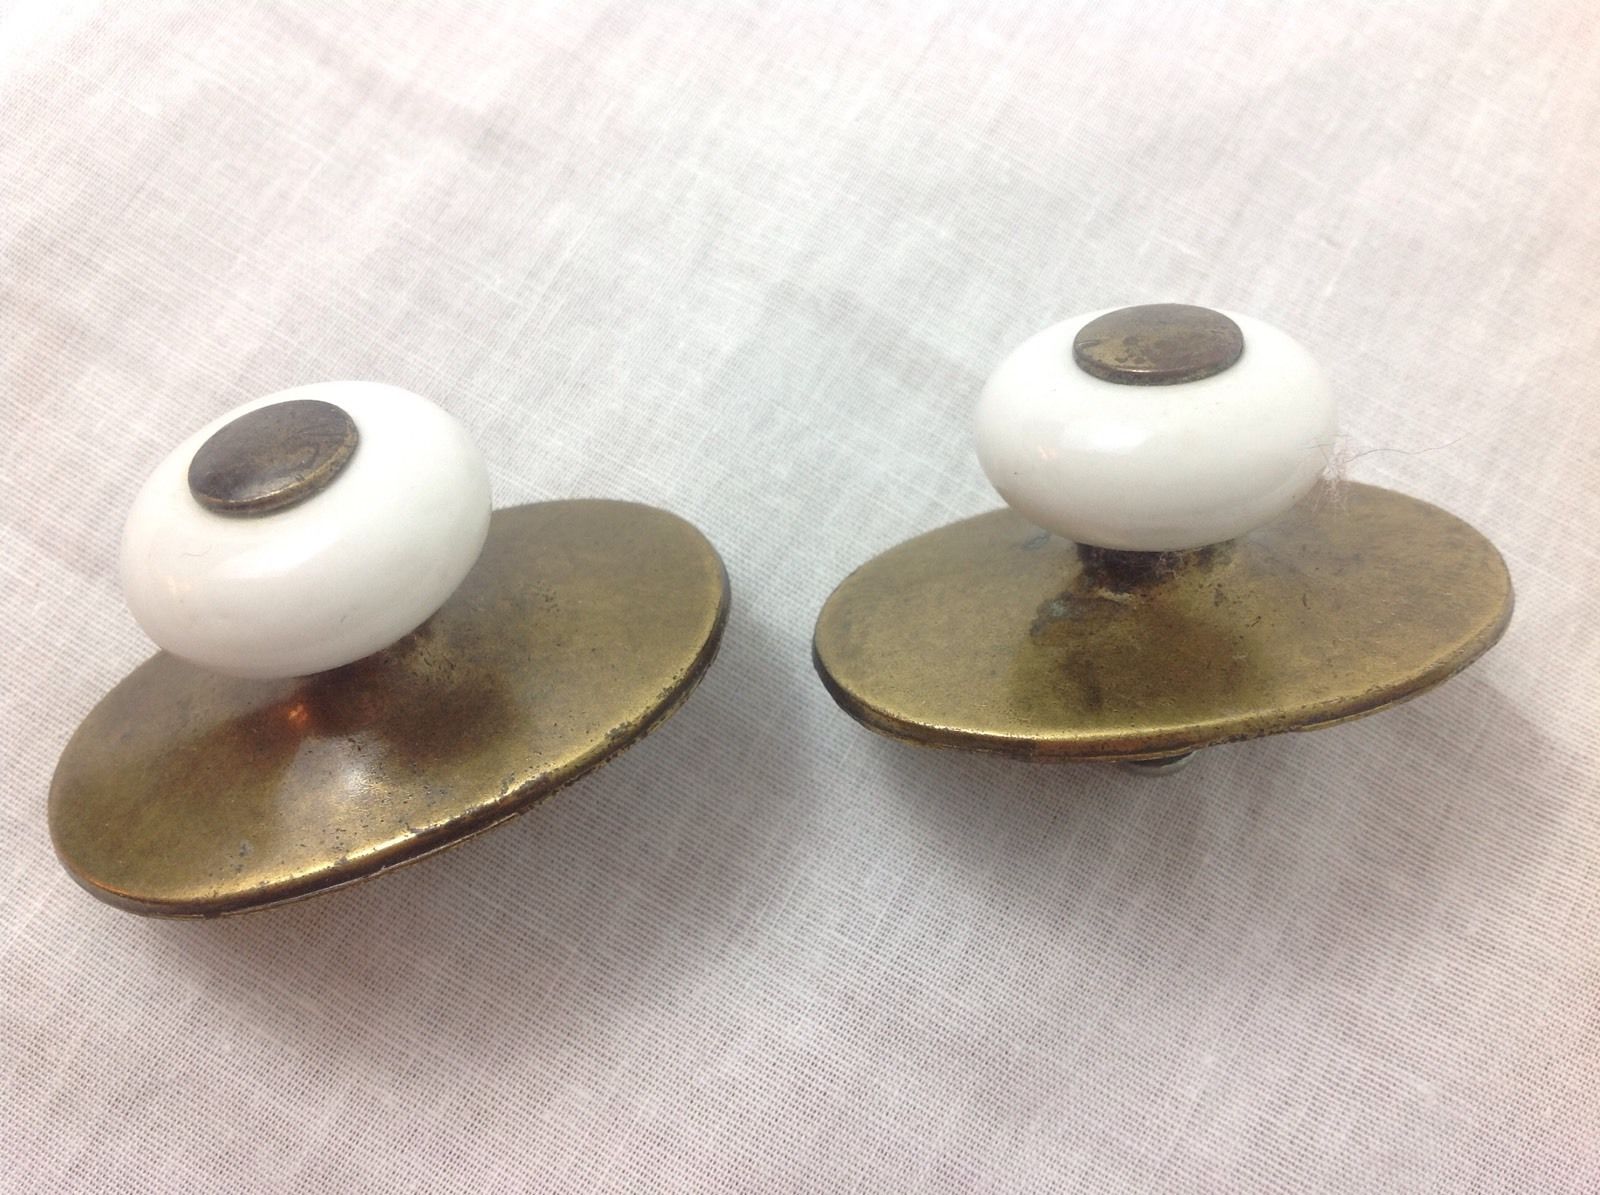 Brass & Ceramic Round White Drawer Pulls Handles Accents Cabinet Hardware